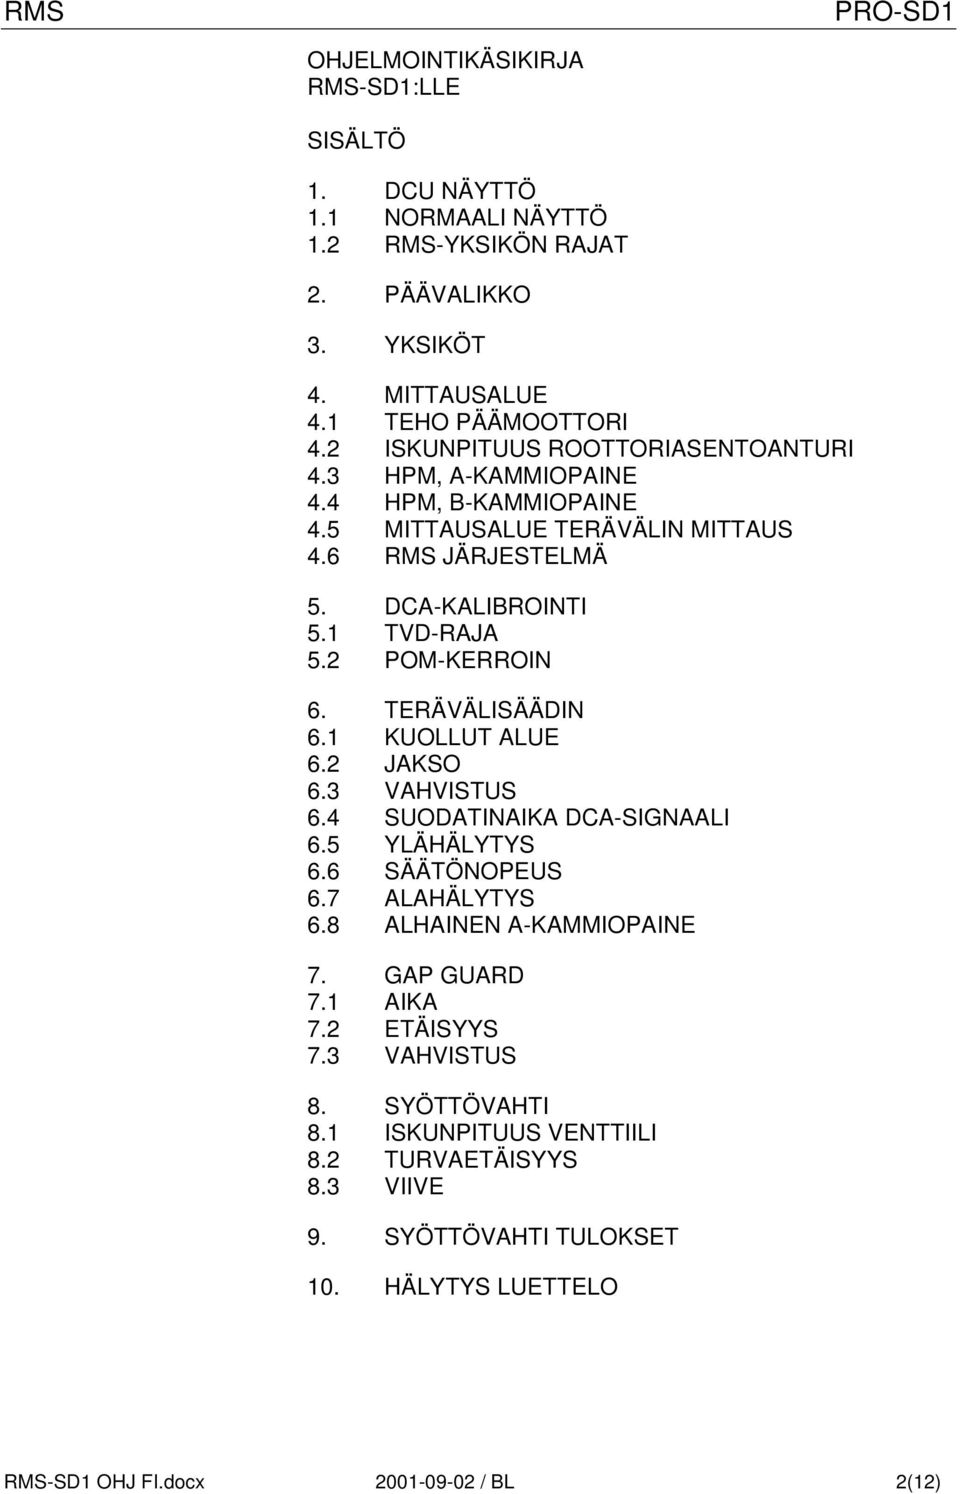 2 POM-KERROIN 6. TERÄVÄLISÄÄDIN 6.1 KUOLLUT ALUE 6.2 JAKSO 6.3 VAHVISTUS 6.4 SUODATINAIKA DCA-SIGNAALI 6.5 YLÄHÄLYTYS 6.6 SÄÄTÖNOPEUS 6.7 ALAHÄLYTYS 6.